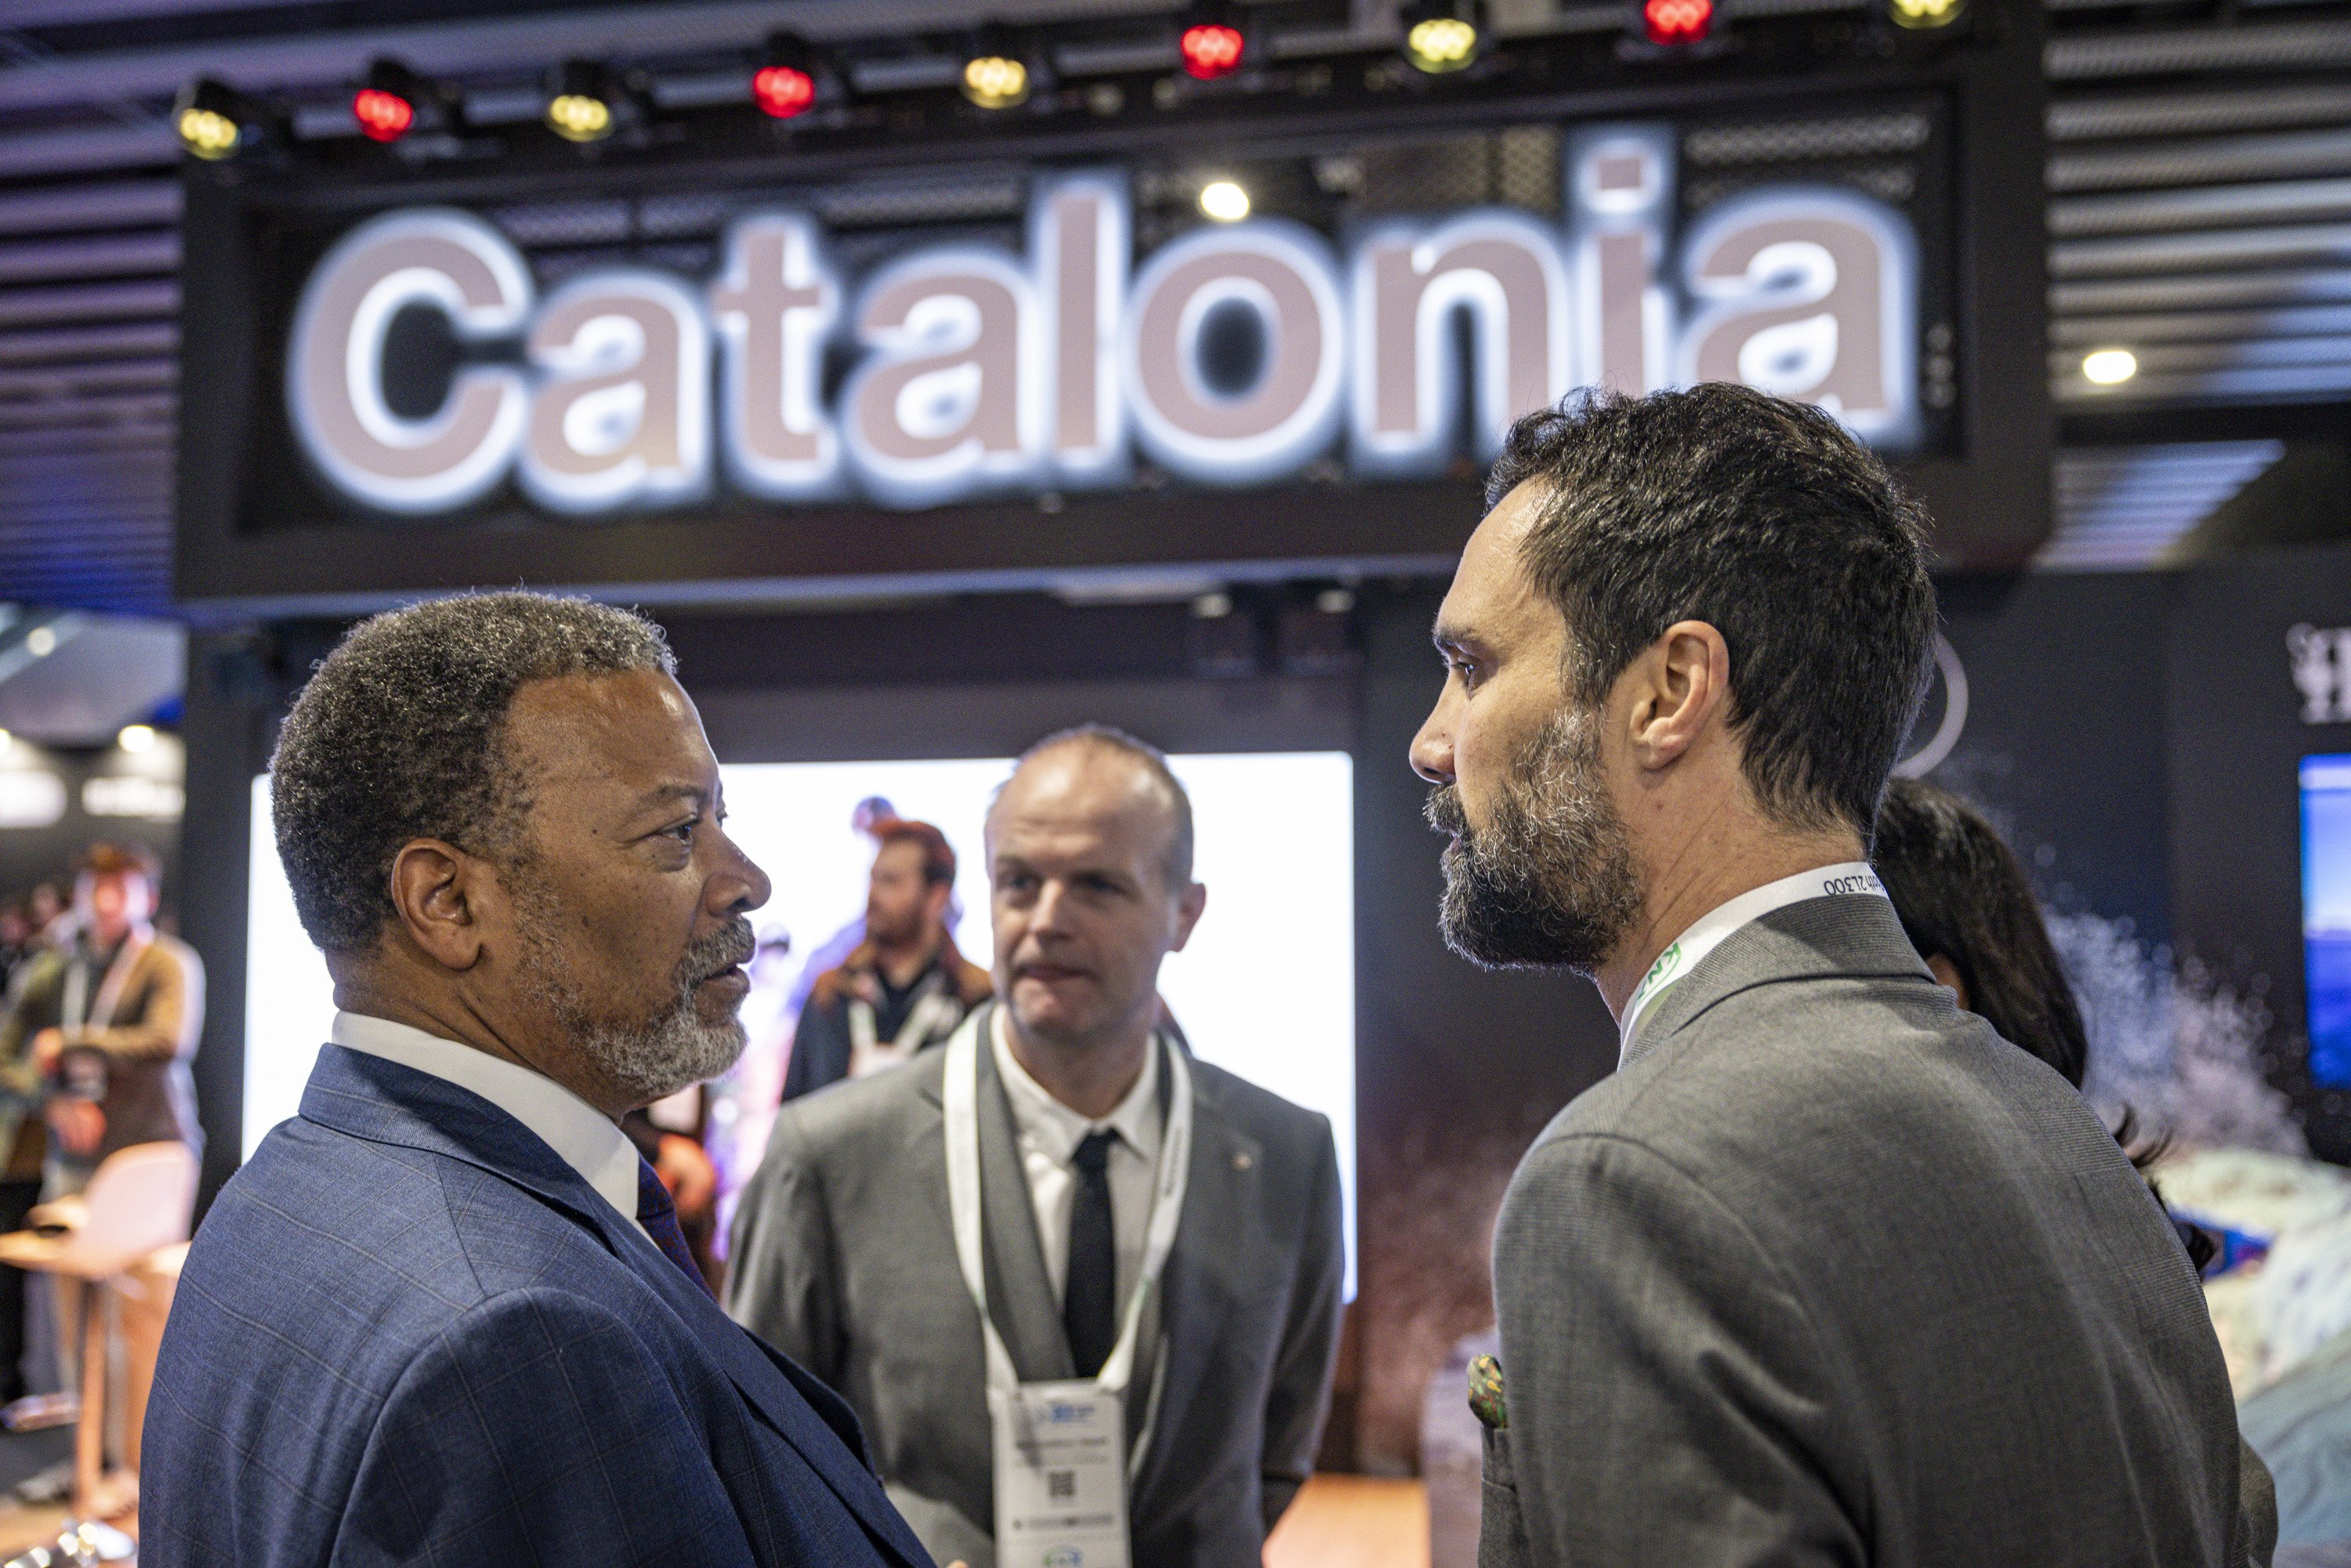 El sector audiovisual crece un 7% en Catalunya y genera más de 7.500 millones de euros